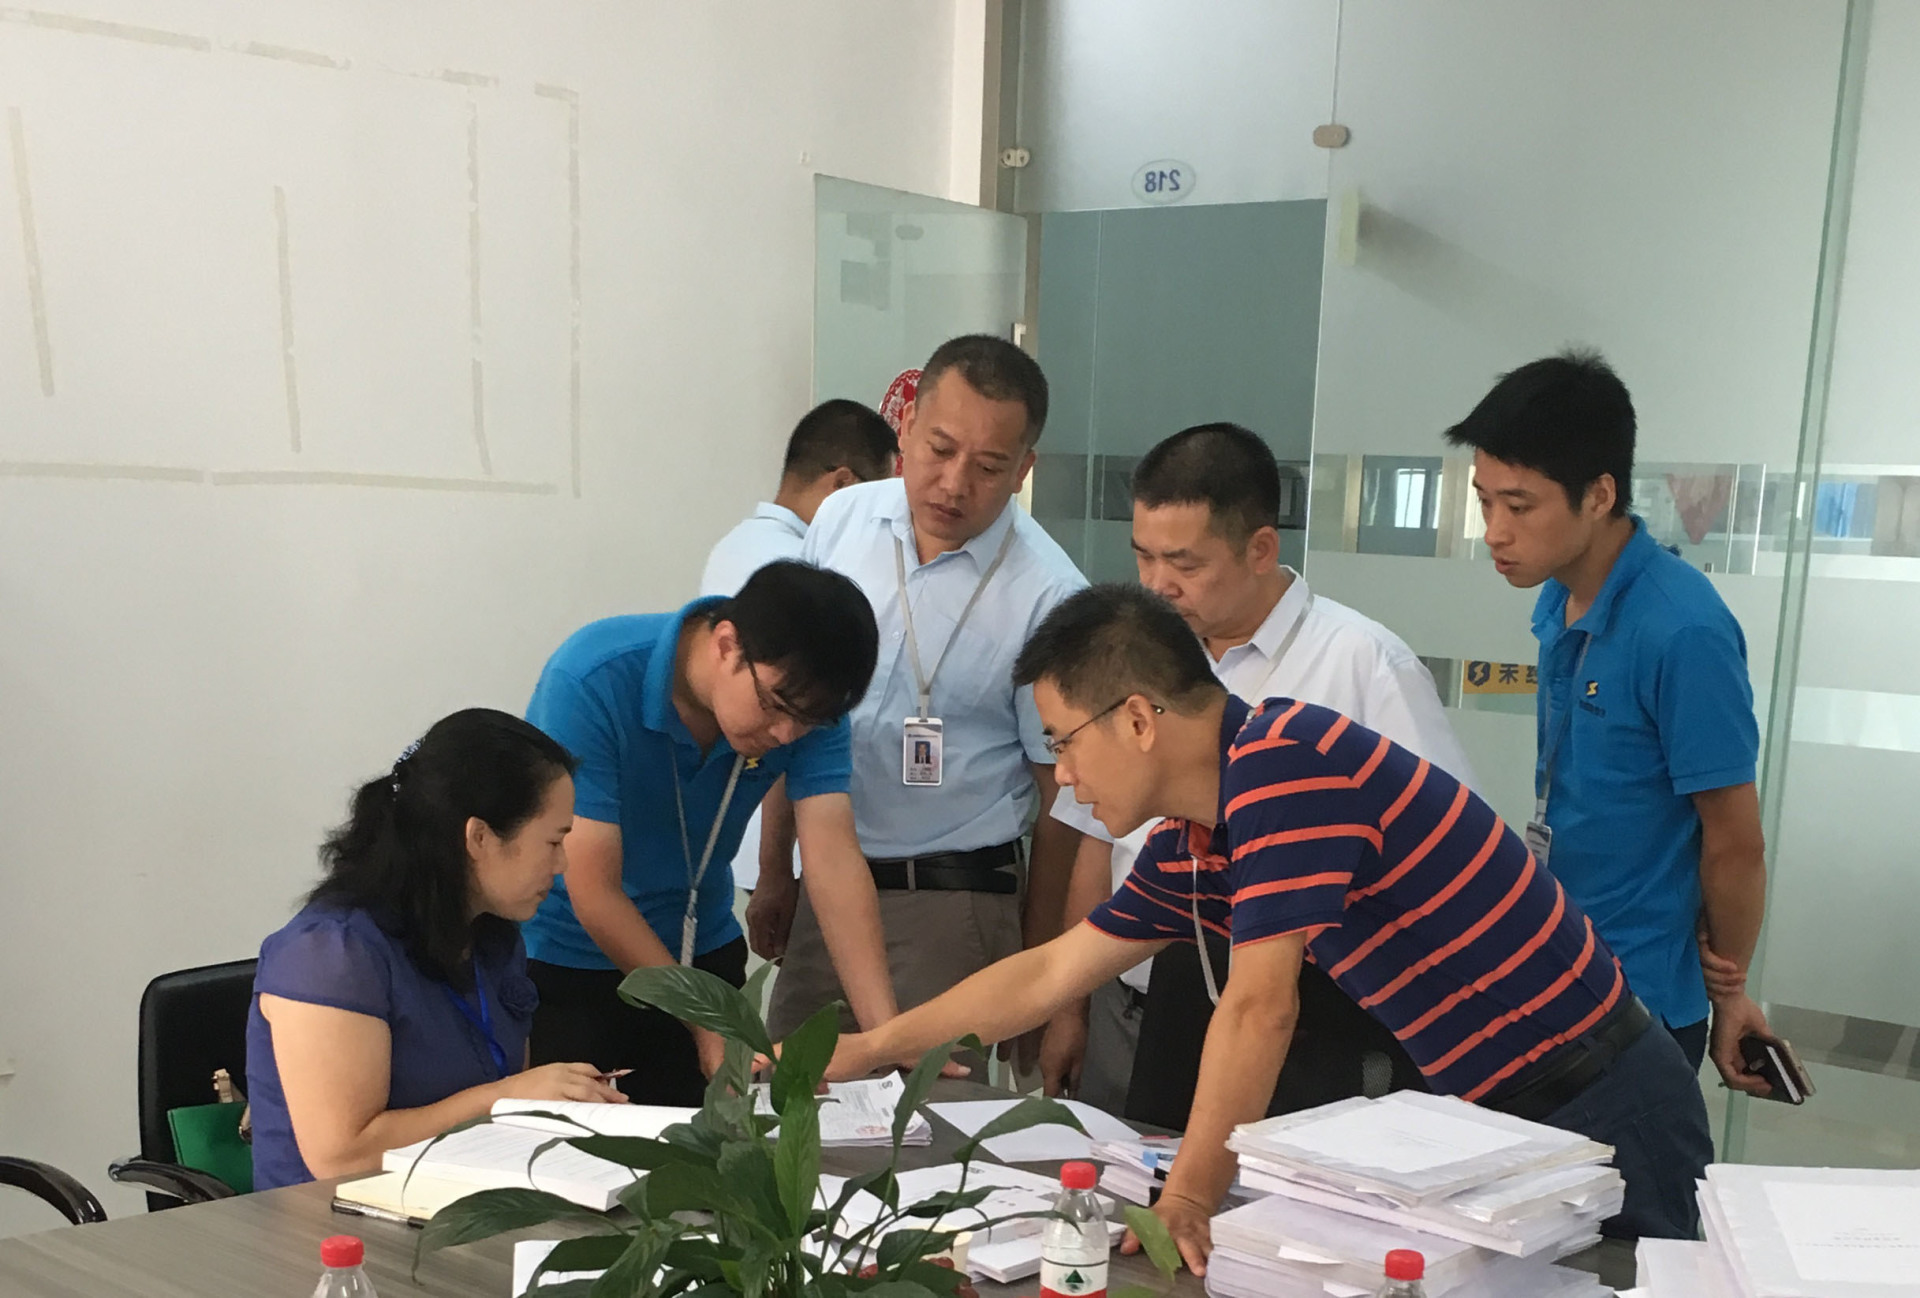 广西壮族自治区质量技术监督局认证认可监管处专家组在我司进行现场核验